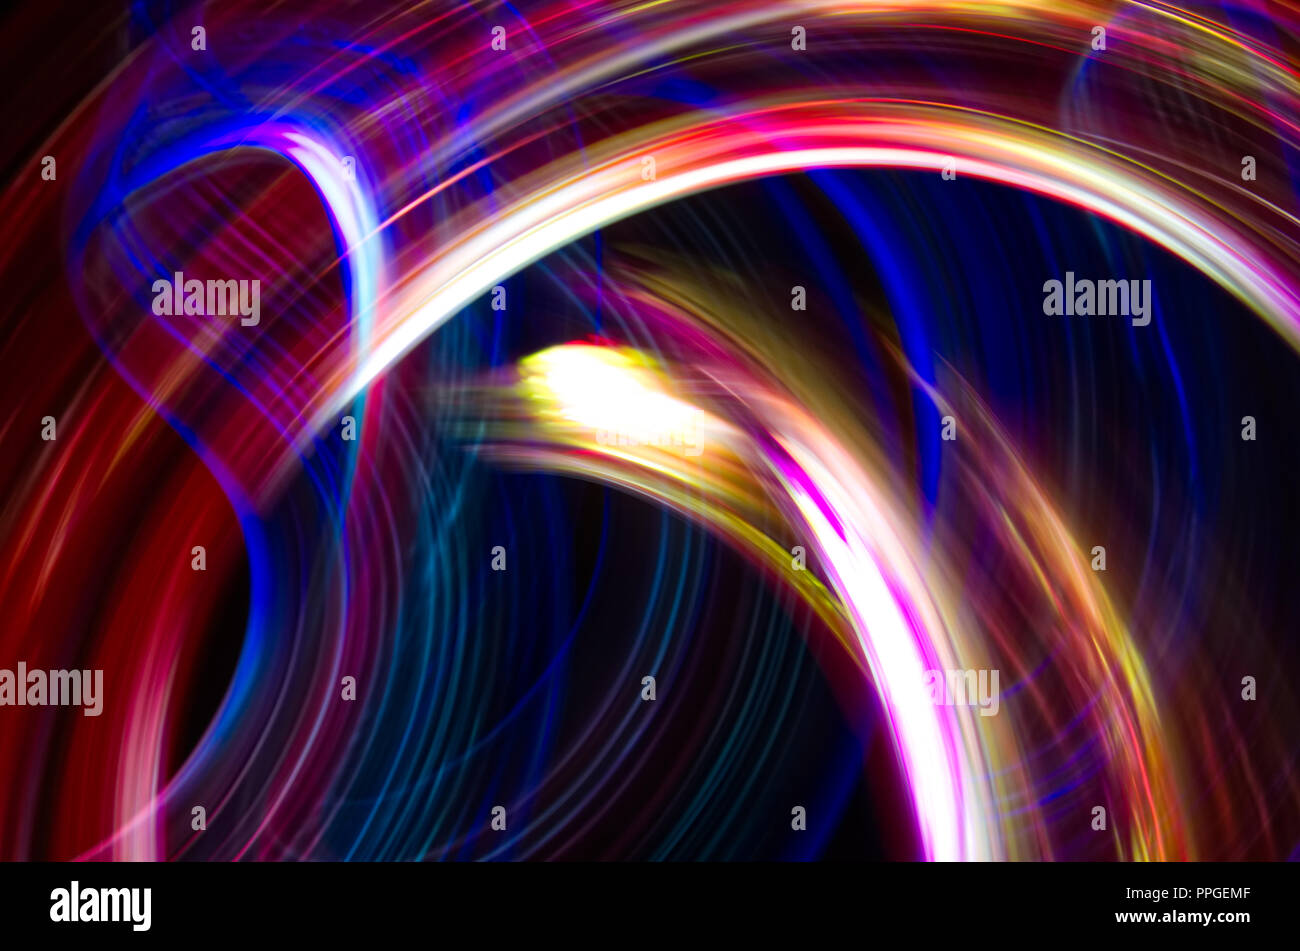 Zusammenfassung Hintergrund gut für eine Anzeige, hübsche wirbelt der Licht, in hellen Farben. Neon-effekt. Stockfoto